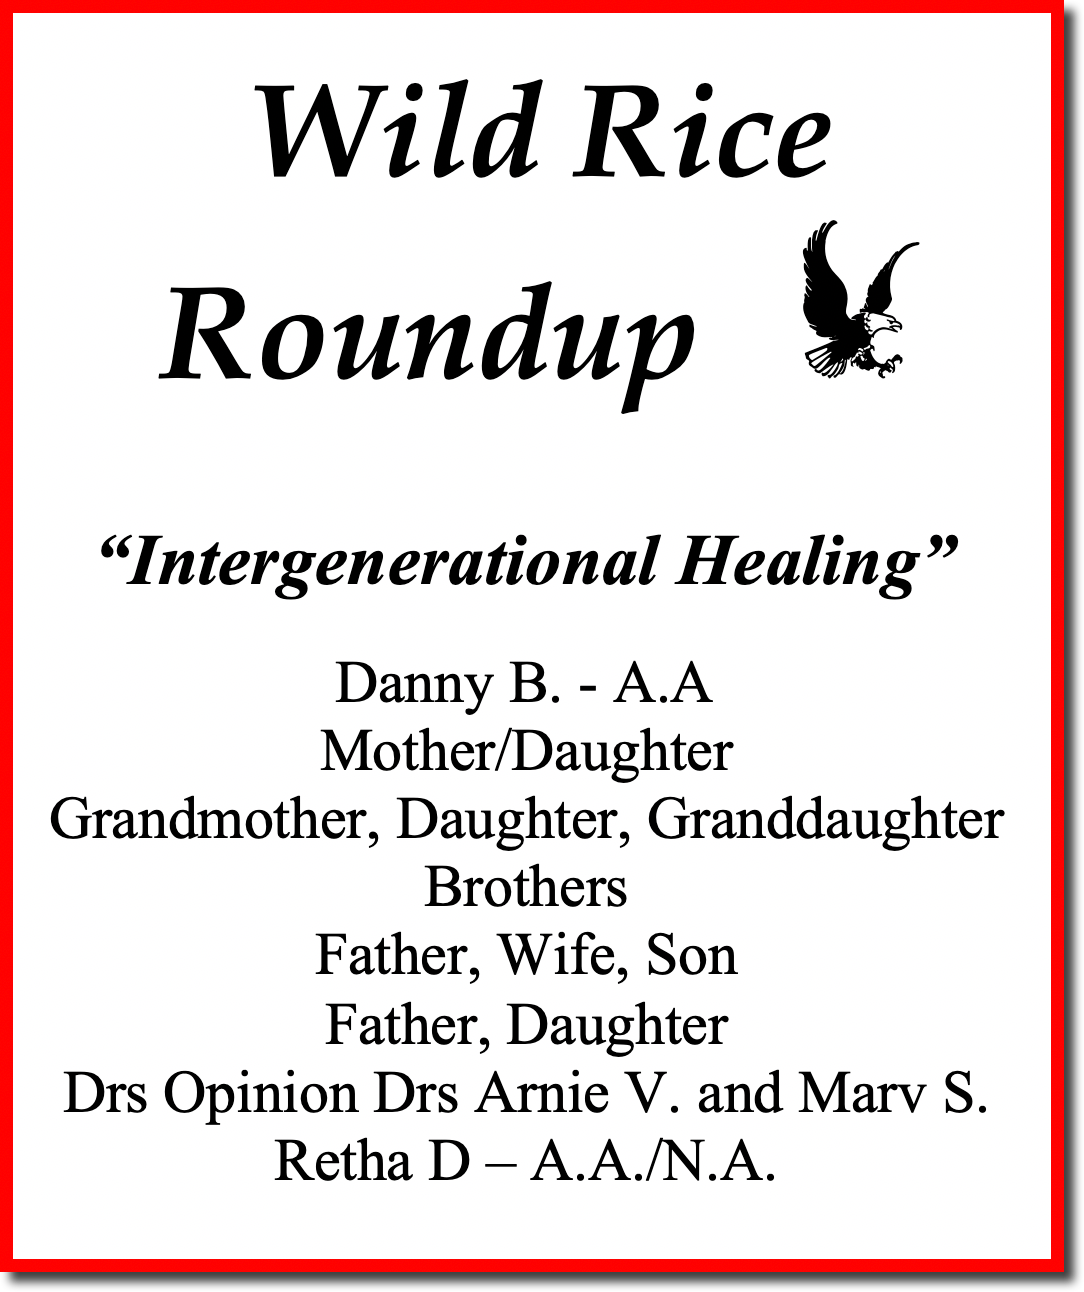 Wild Rice Roundup 2021